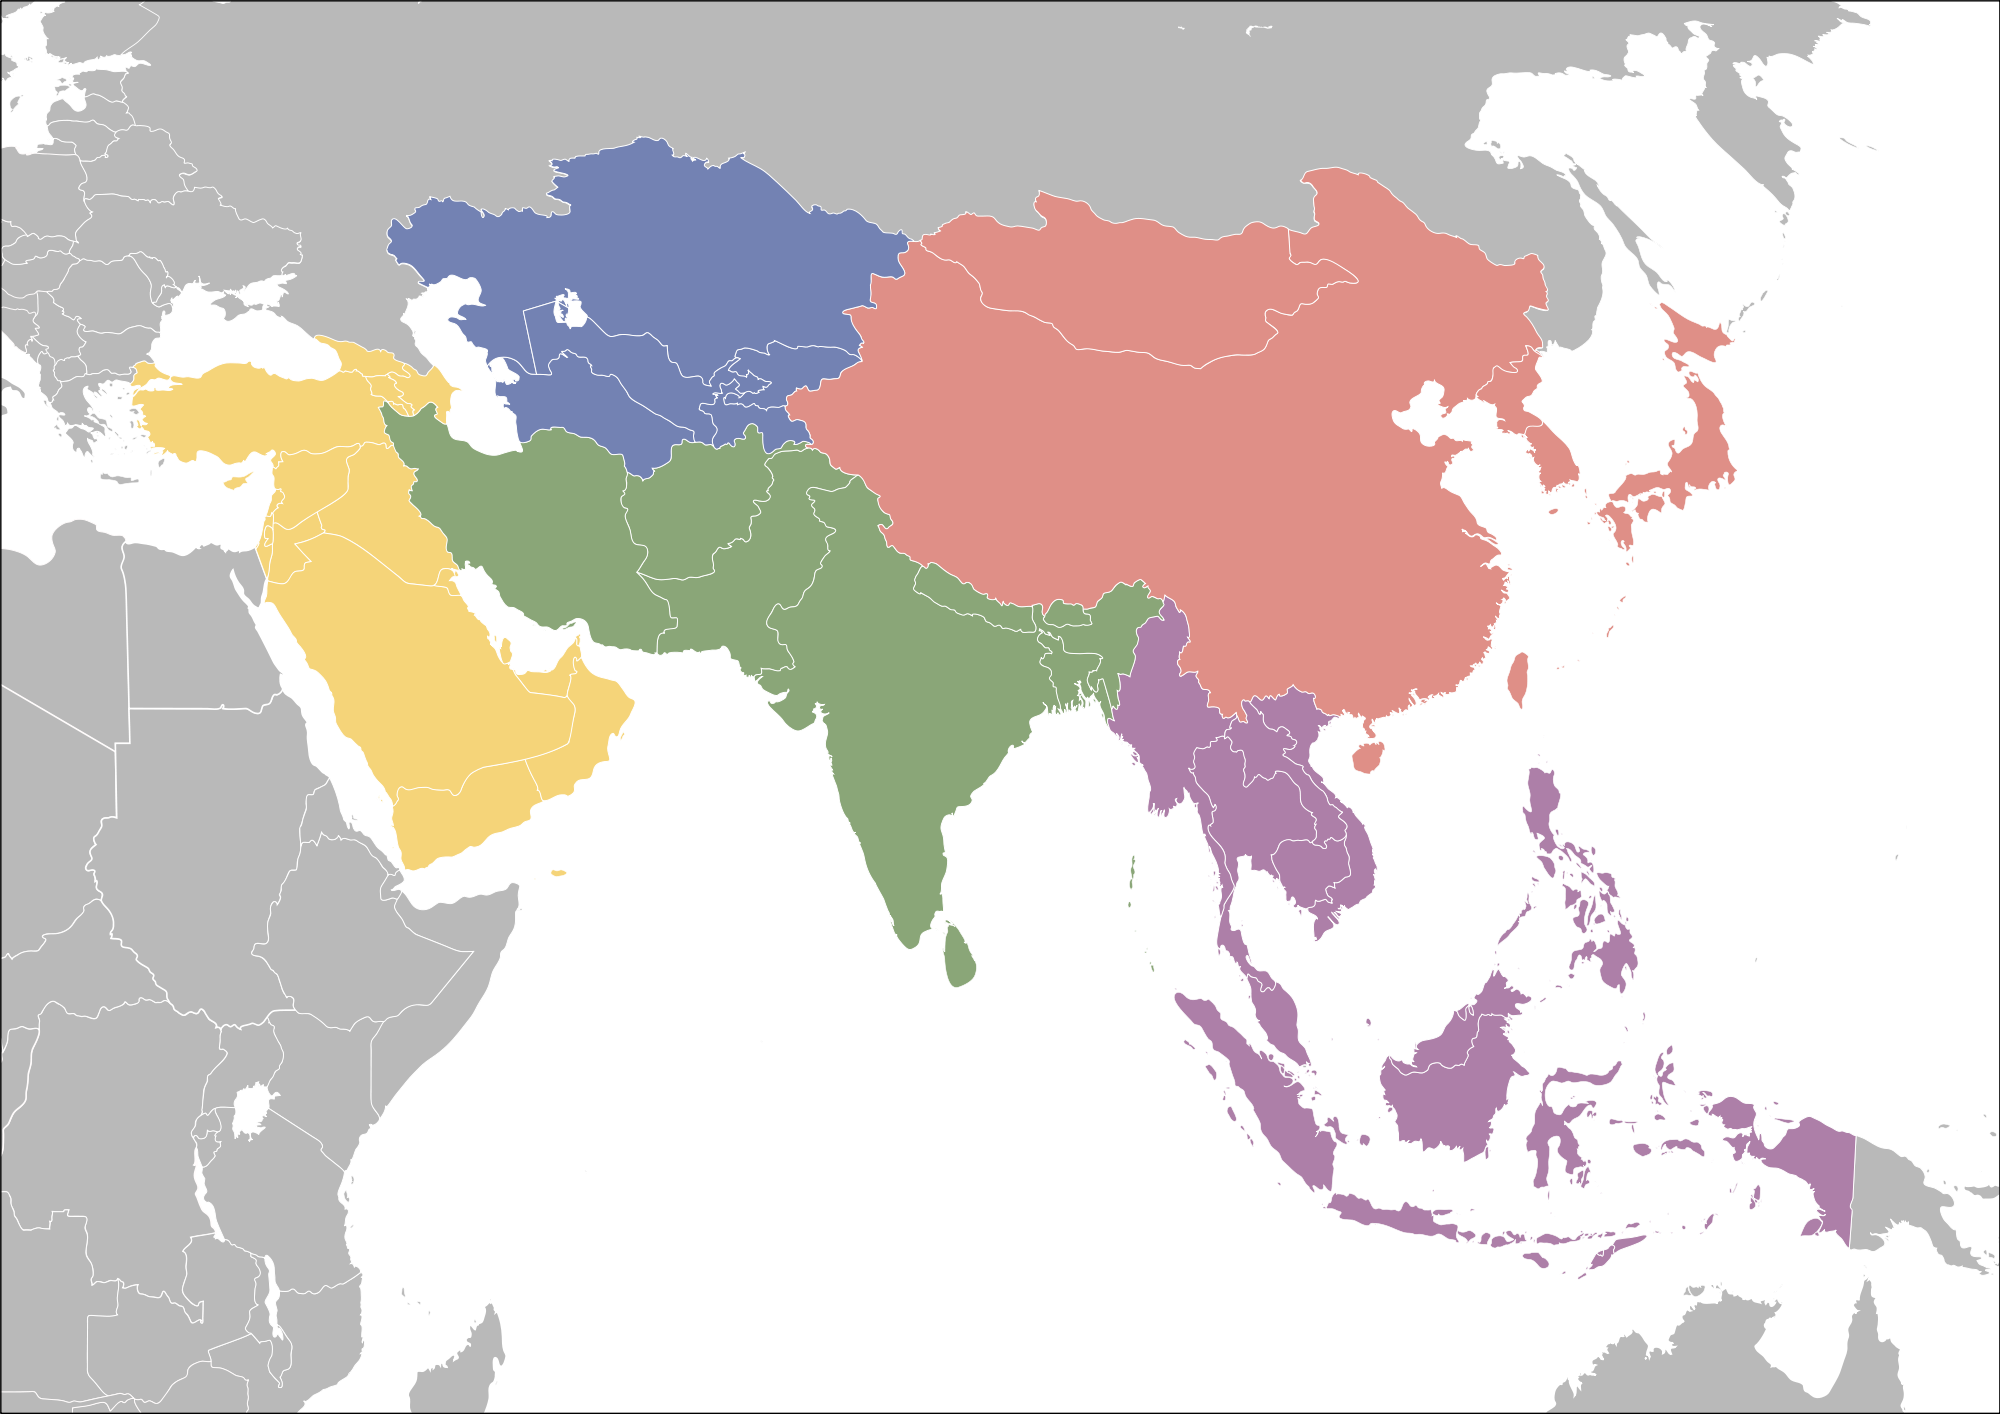 Оон азия. Субрегионы зарубежной Азии. Субрегионы зарубежной Азии Восточной Южной Юго Восточной Азии. Субрегионы зарубежной Азии Южная Азия. Регионы Южная Азия Юго-Западная Азия.